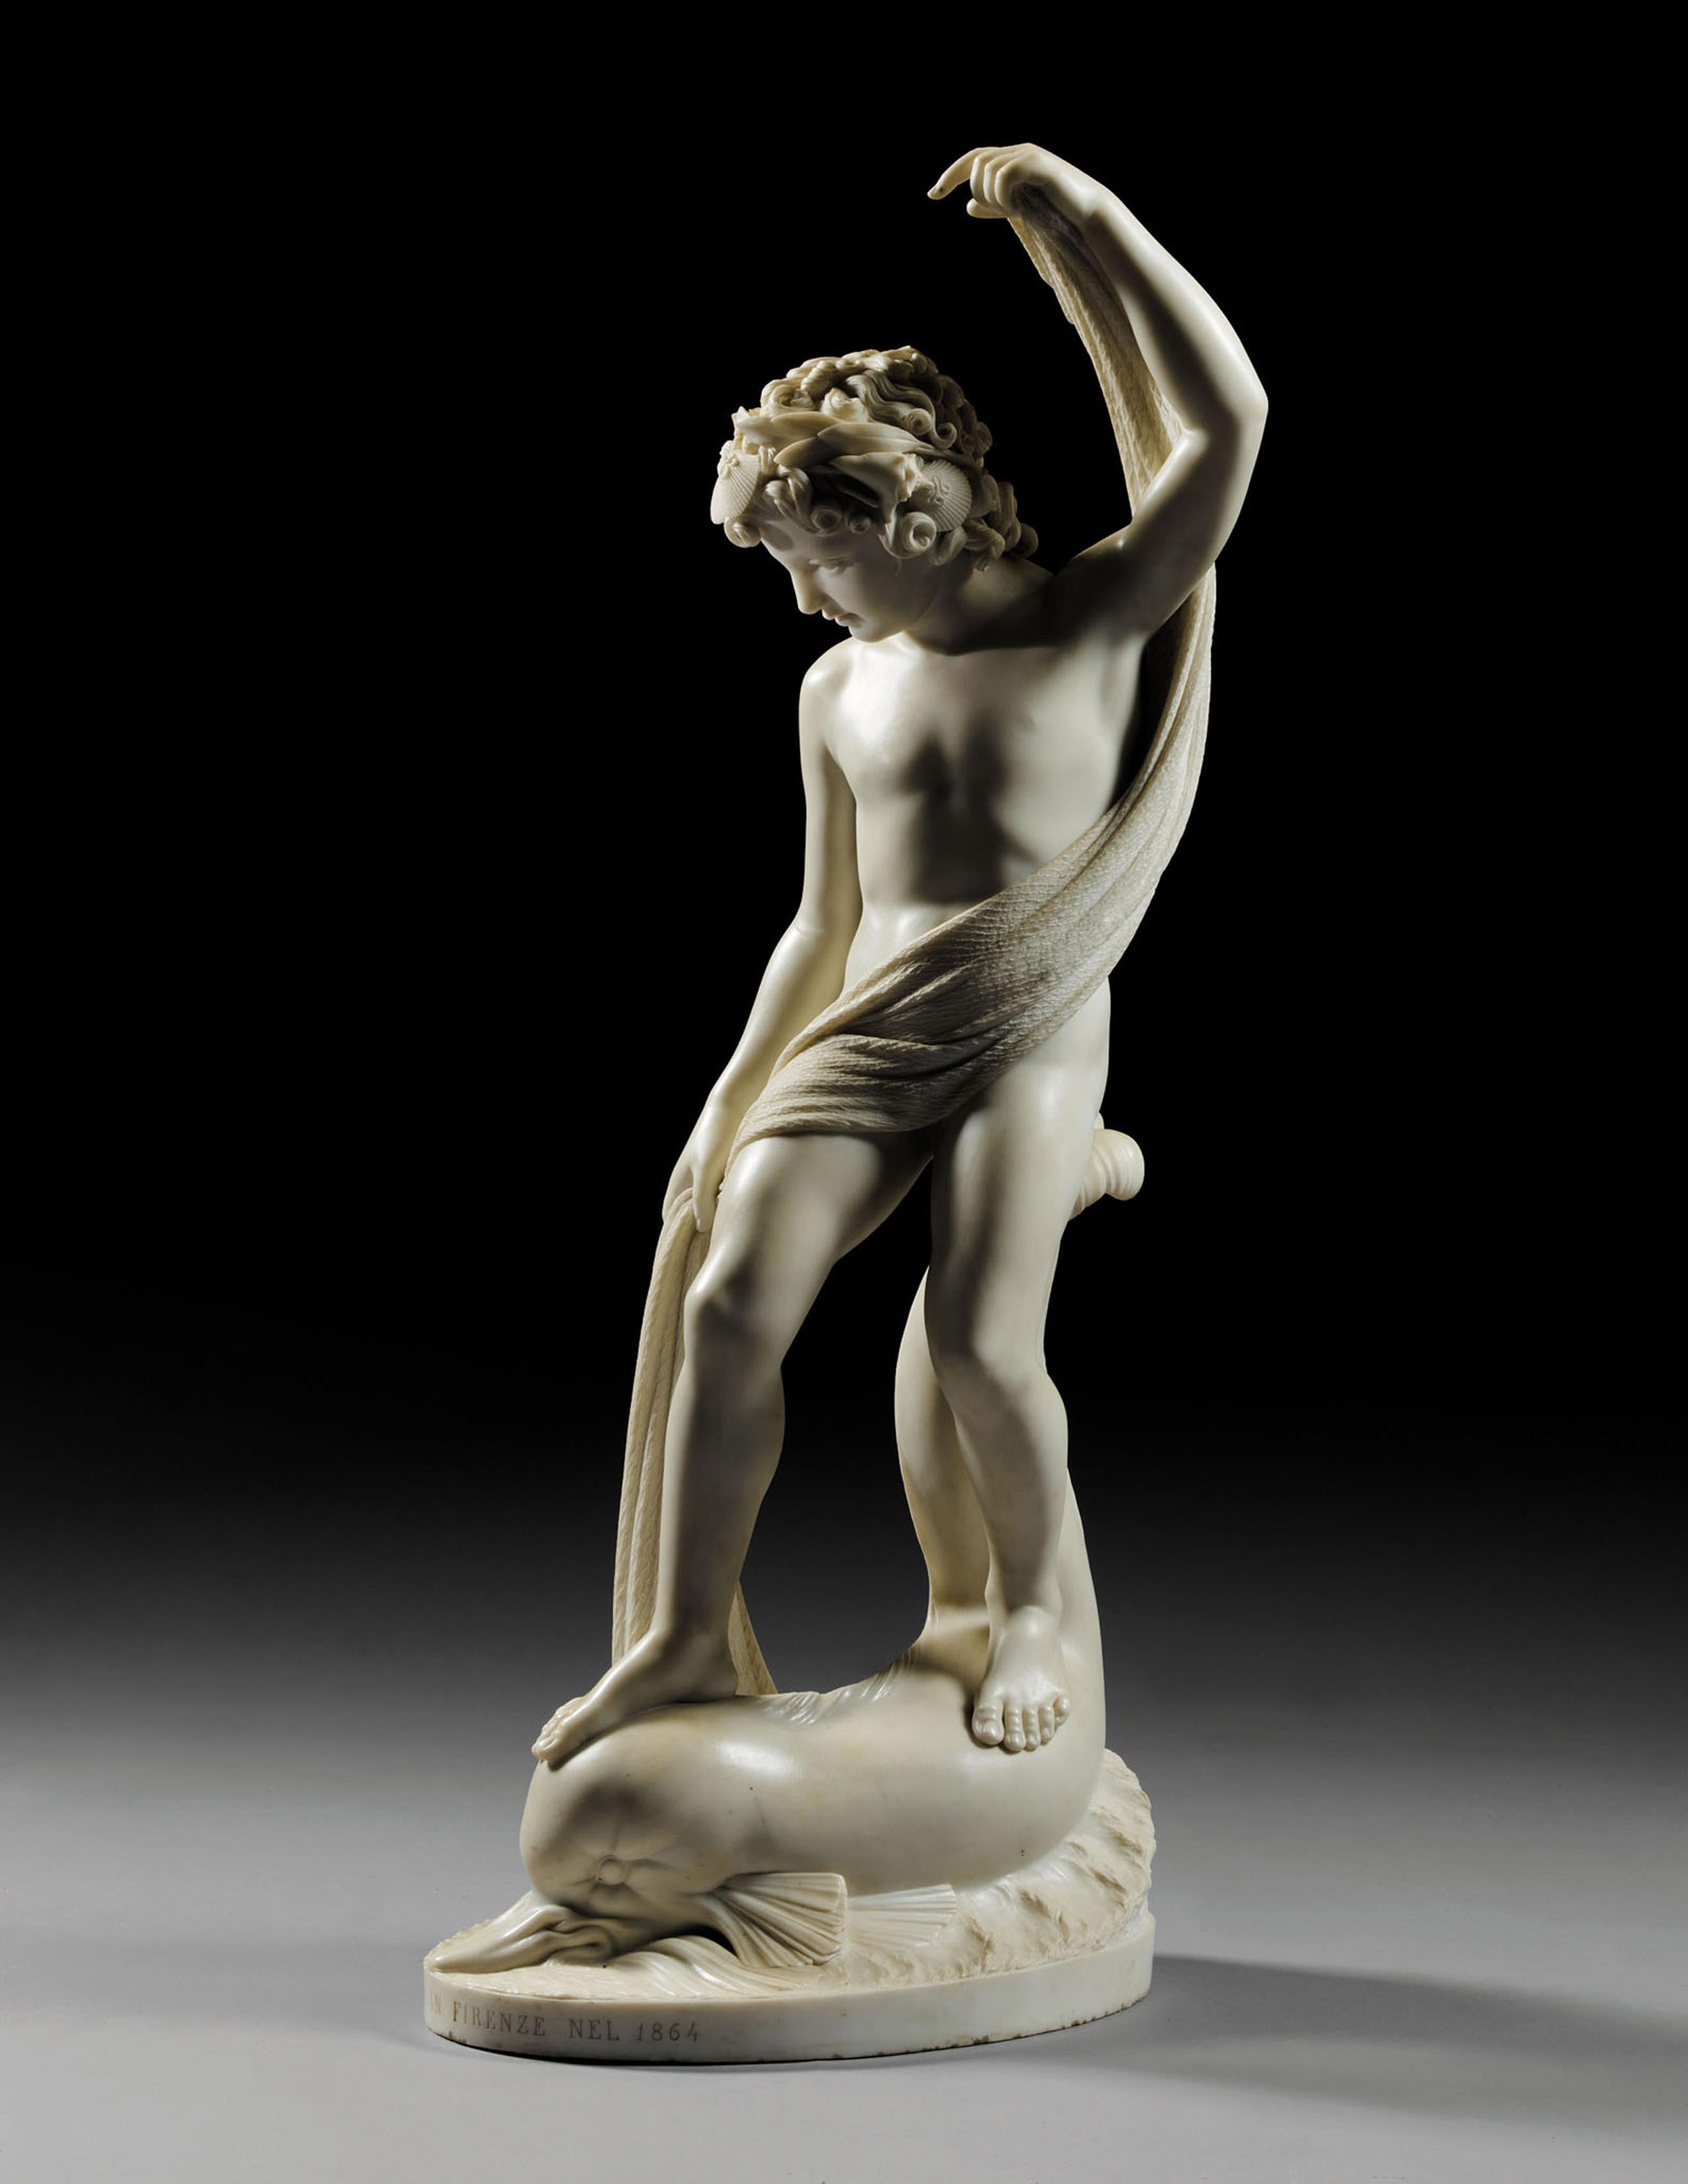 Pio Fedi Still-Life Sculpture - The Supreme Fisher Boy Carrara Marble statue